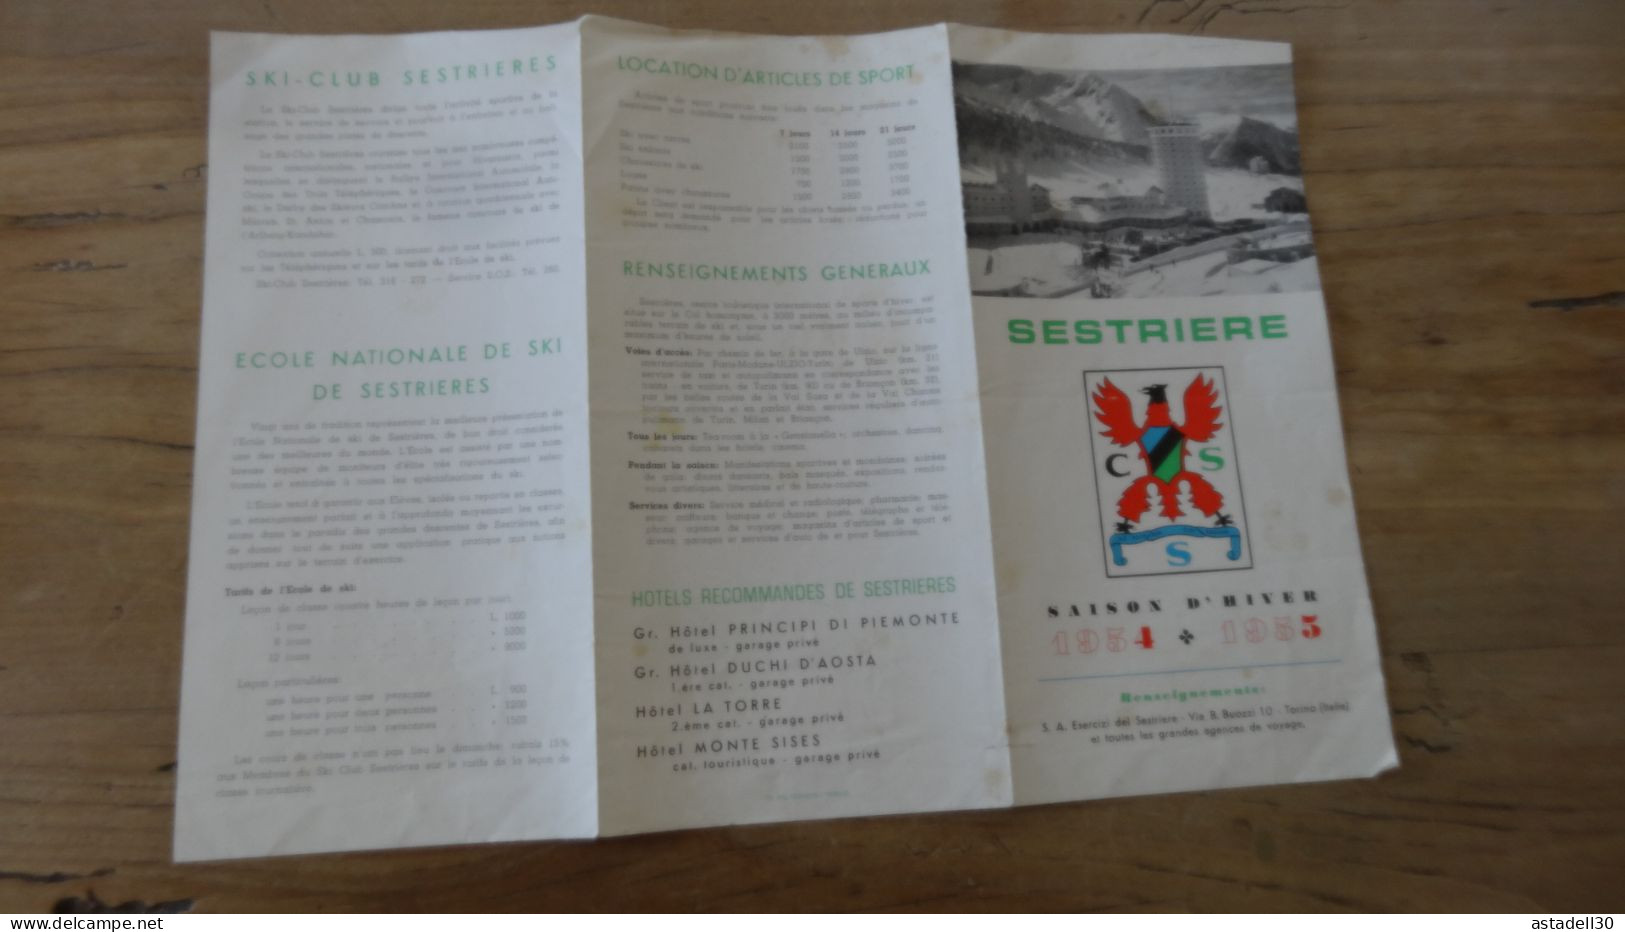 Dépliant Saison D'hiver 1954-1955, SESTRIERE  ................ Caisse-27 - Dépliants Touristiques